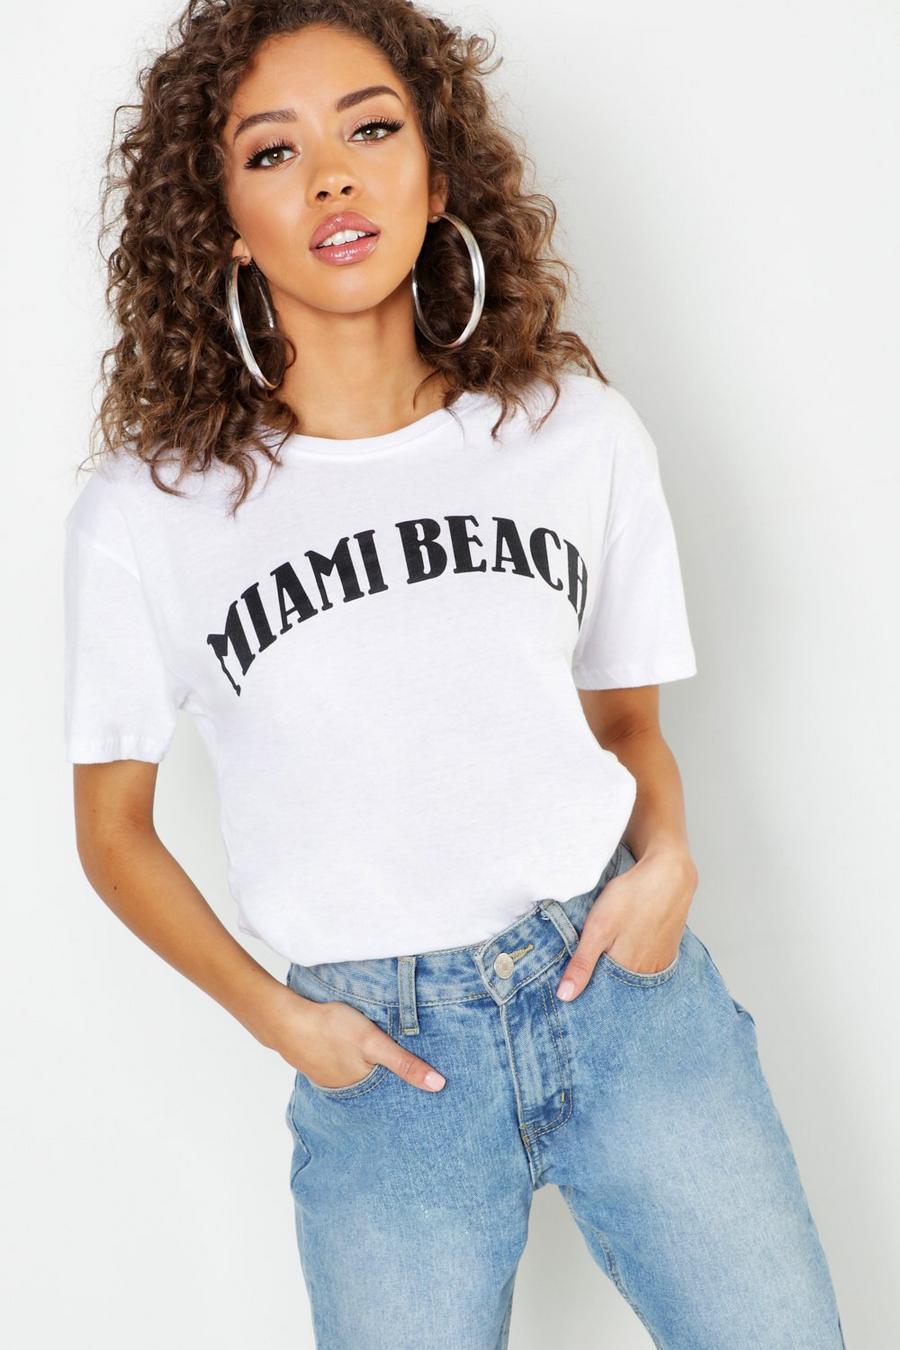 Camiseta con eslogan “Miami Beach” Tall image number 1